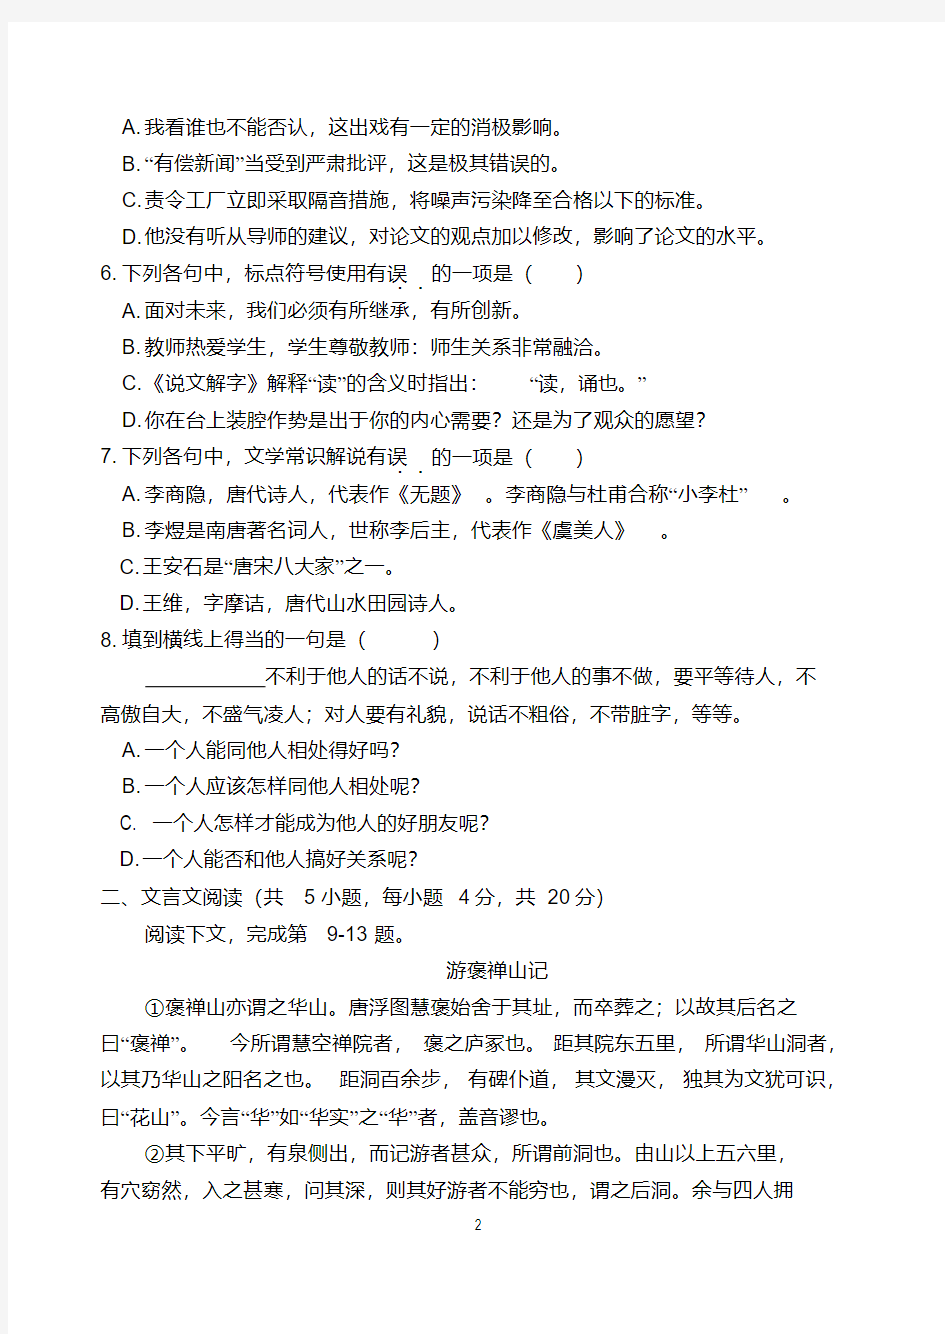 (完整版)2018年重庆对口高职升学考试语文模拟题二十